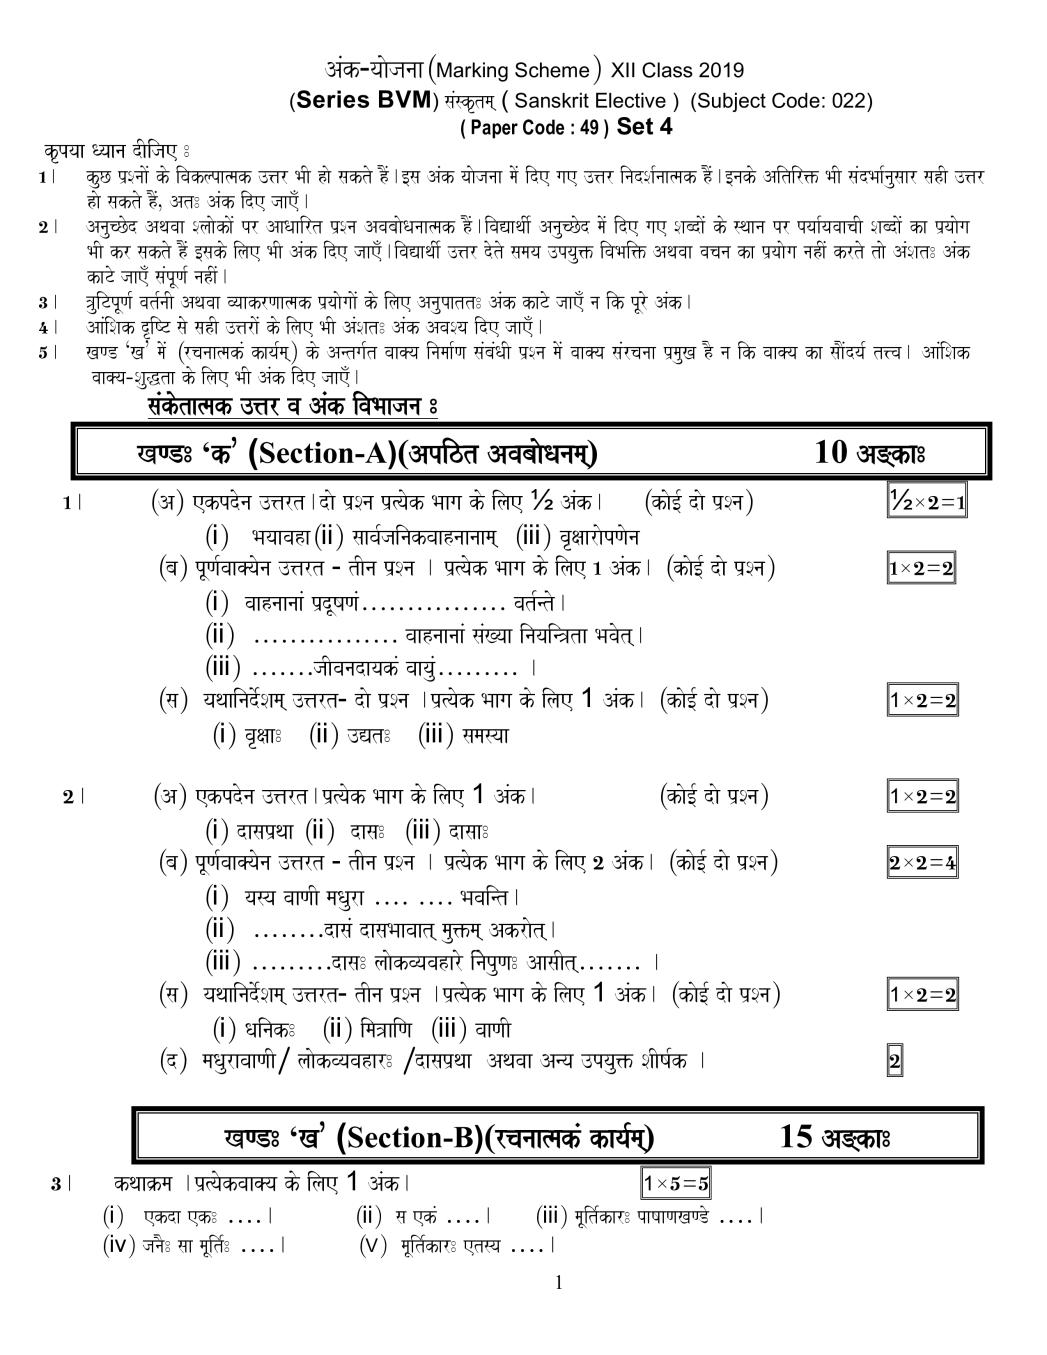 CBSE Class 12 Sanskrit Elective Question Paper 2019 set 1 Solutions - Page 1